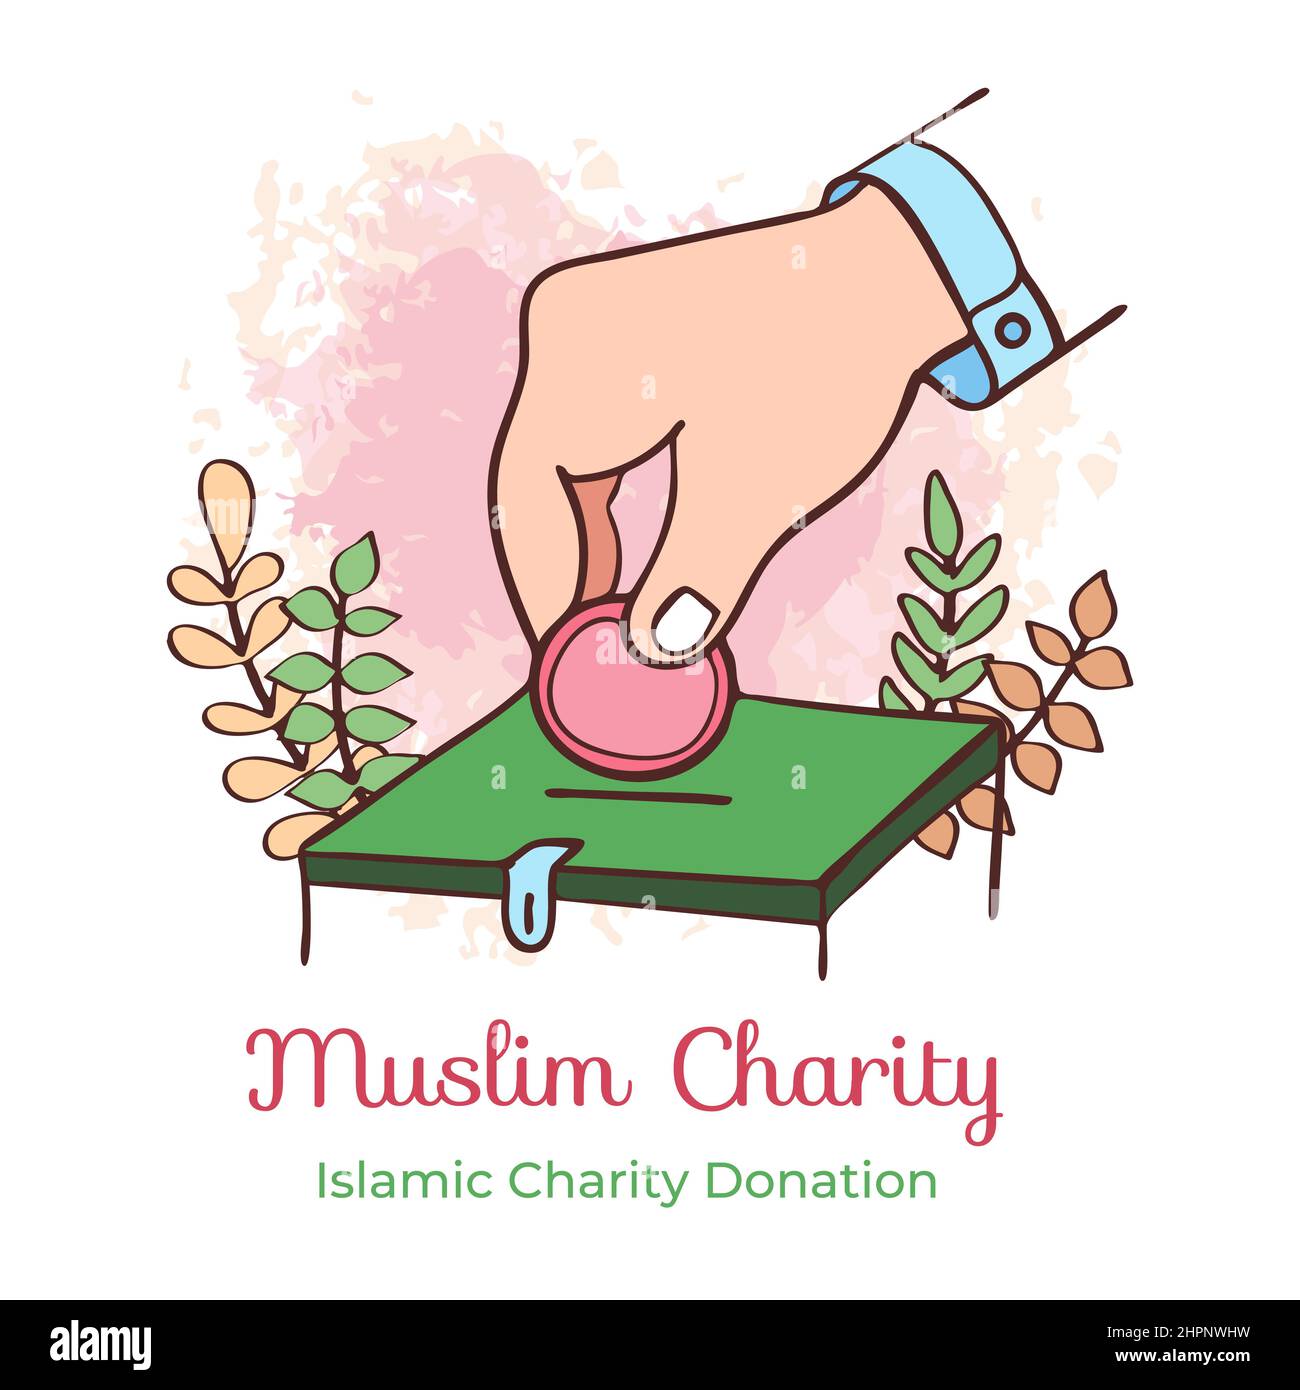 Ilustración de caridad musulmana del ramadán dibujada a mano Ilustración del Vector